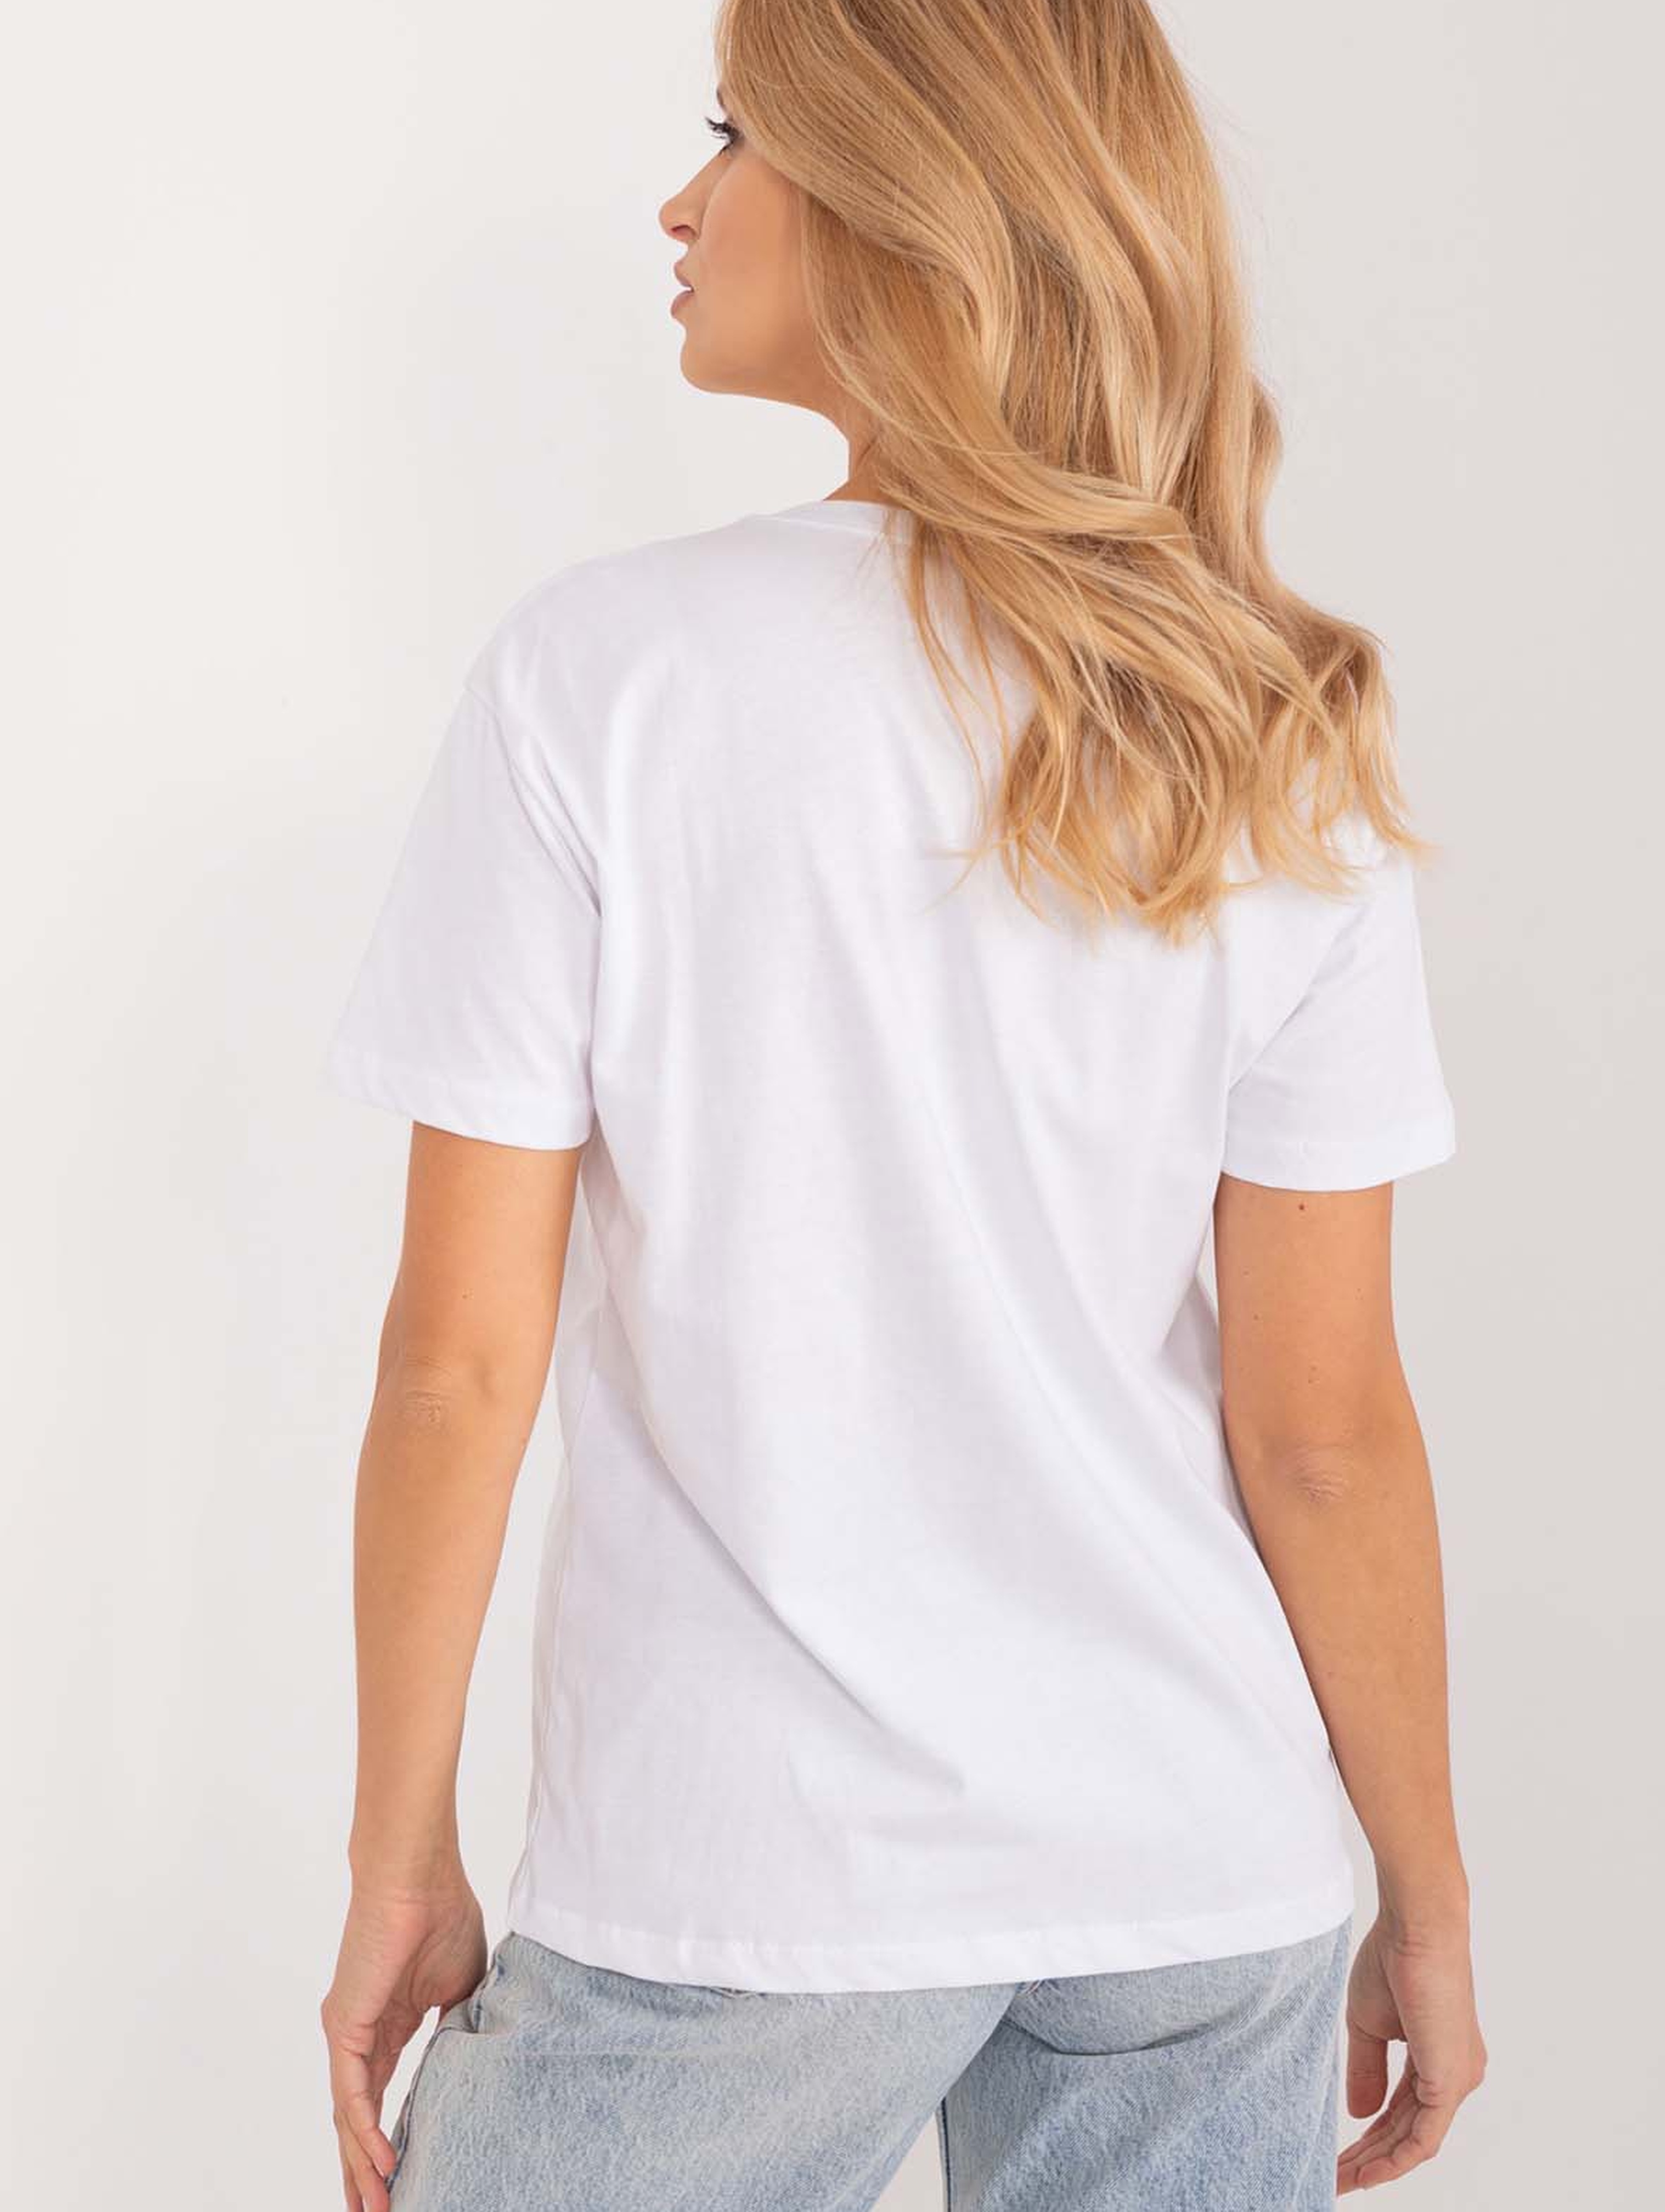 Damski t-shirt biały z aplikacją i napisami